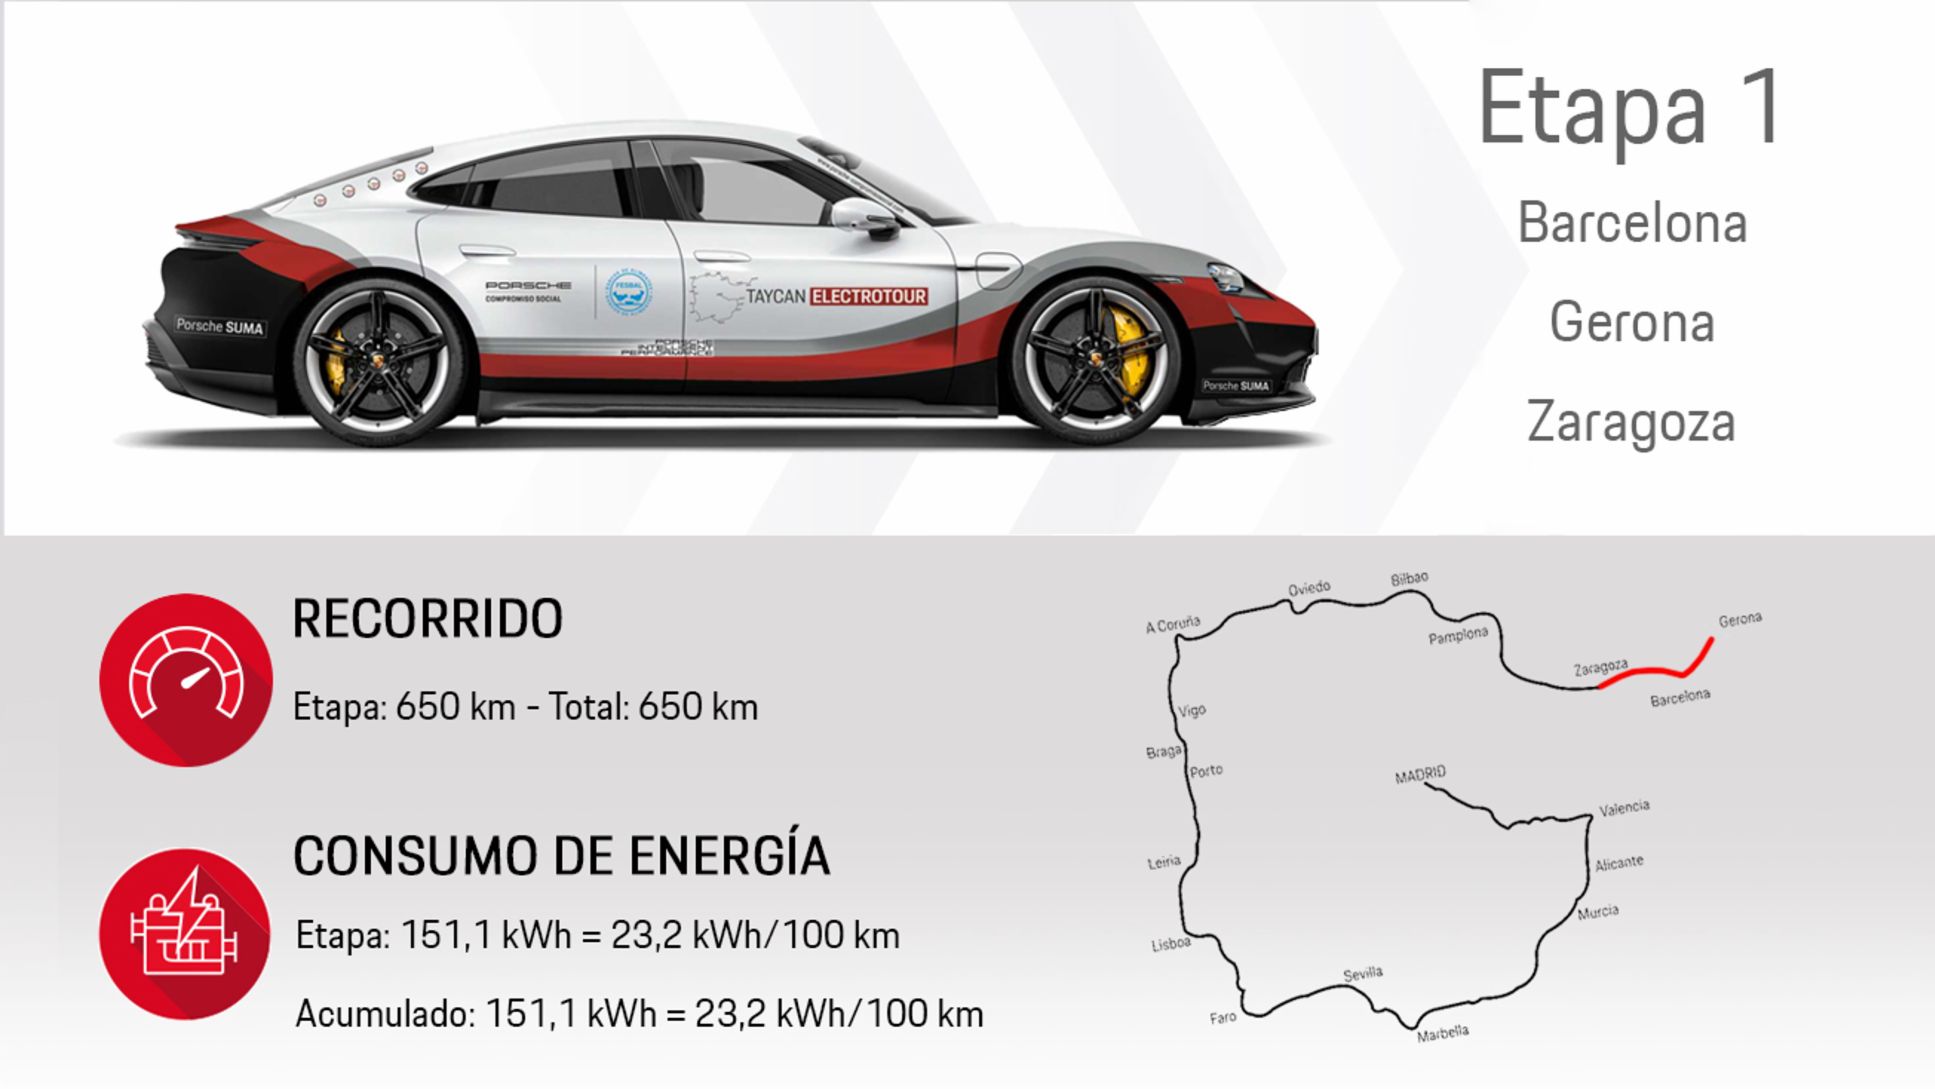 Taycan Electrotour - Etapa 1, 2020, Porsche Ibérica